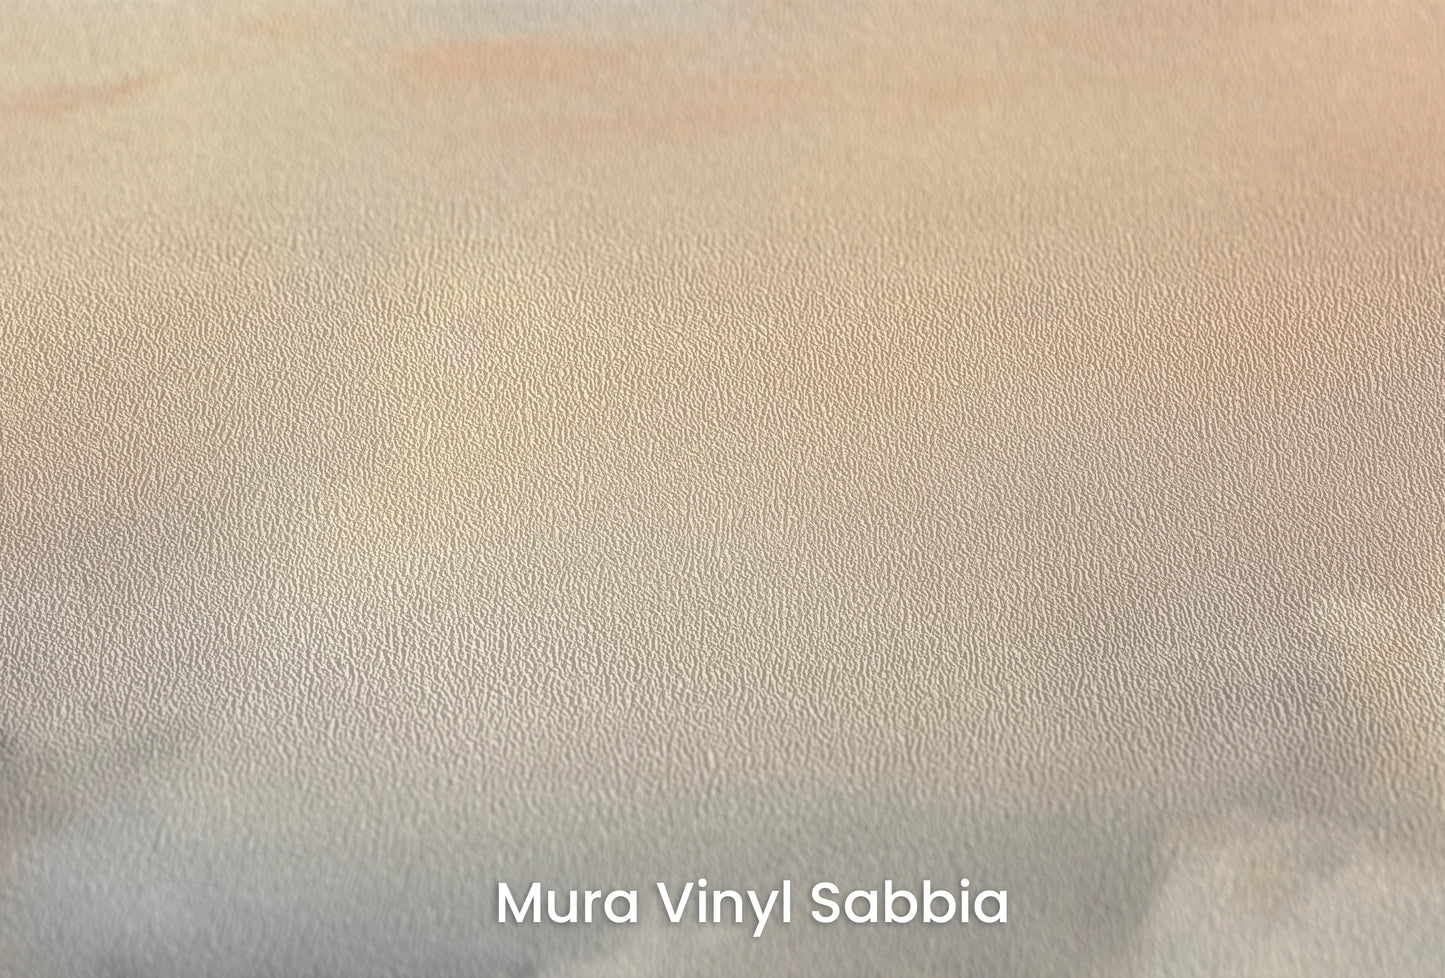 Zbliżenie na artystyczną fototapetę o nazwie Misty Morning Hues na podłożu Mura Vinyl Sabbia struktura grubego ziarna piasku.